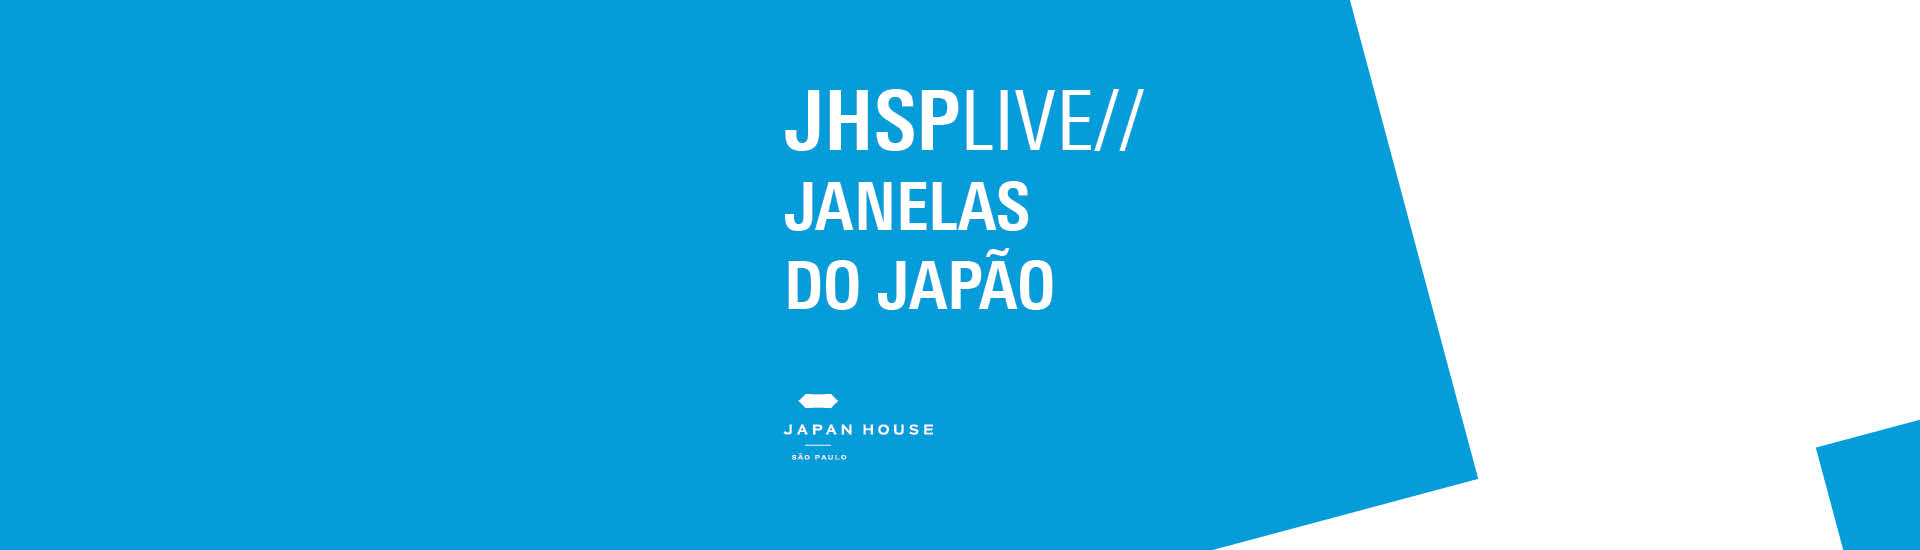 JHSPlive // Janelas do Japão. O texto está em fonte branca e o fundo é azul claro. Embaixo, logo da Japan House São Paulo.